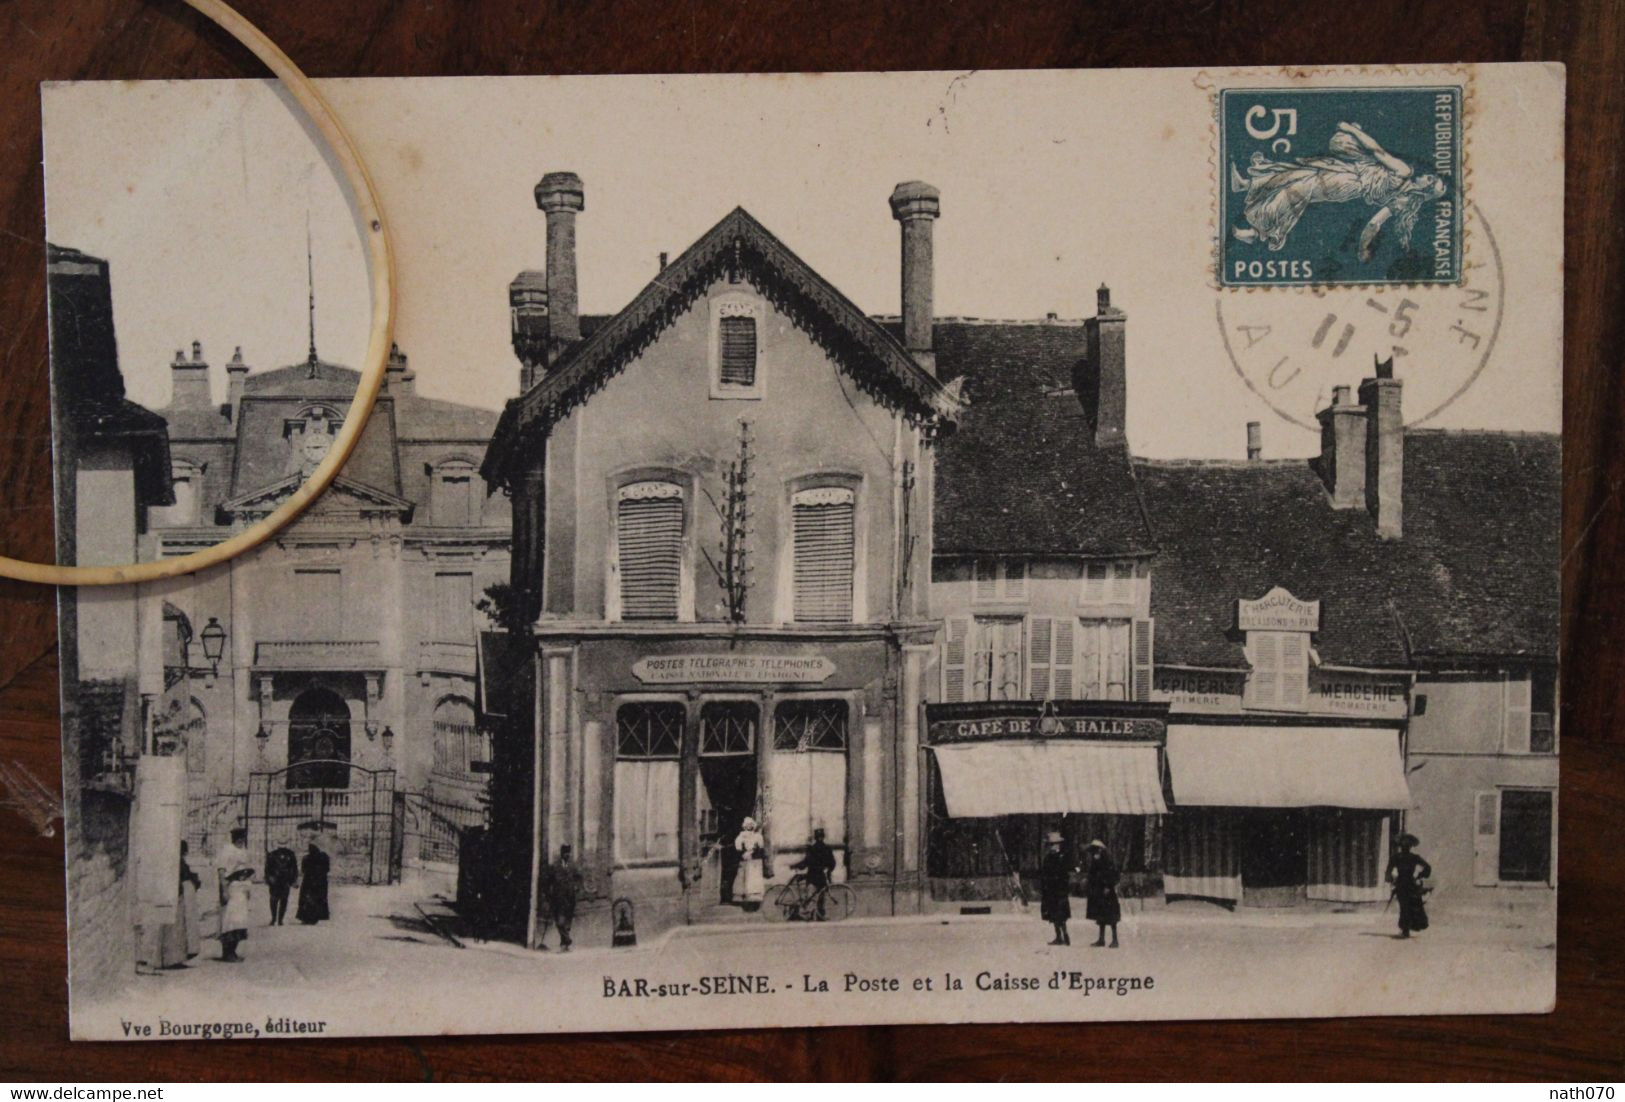 1911 Cpa Ak Bar Sur Seine La Poste Et La Caisse D'Epargne Animée Voyagée Café De La Halle Baigneux Les Juifs - Bar-sur-Seine